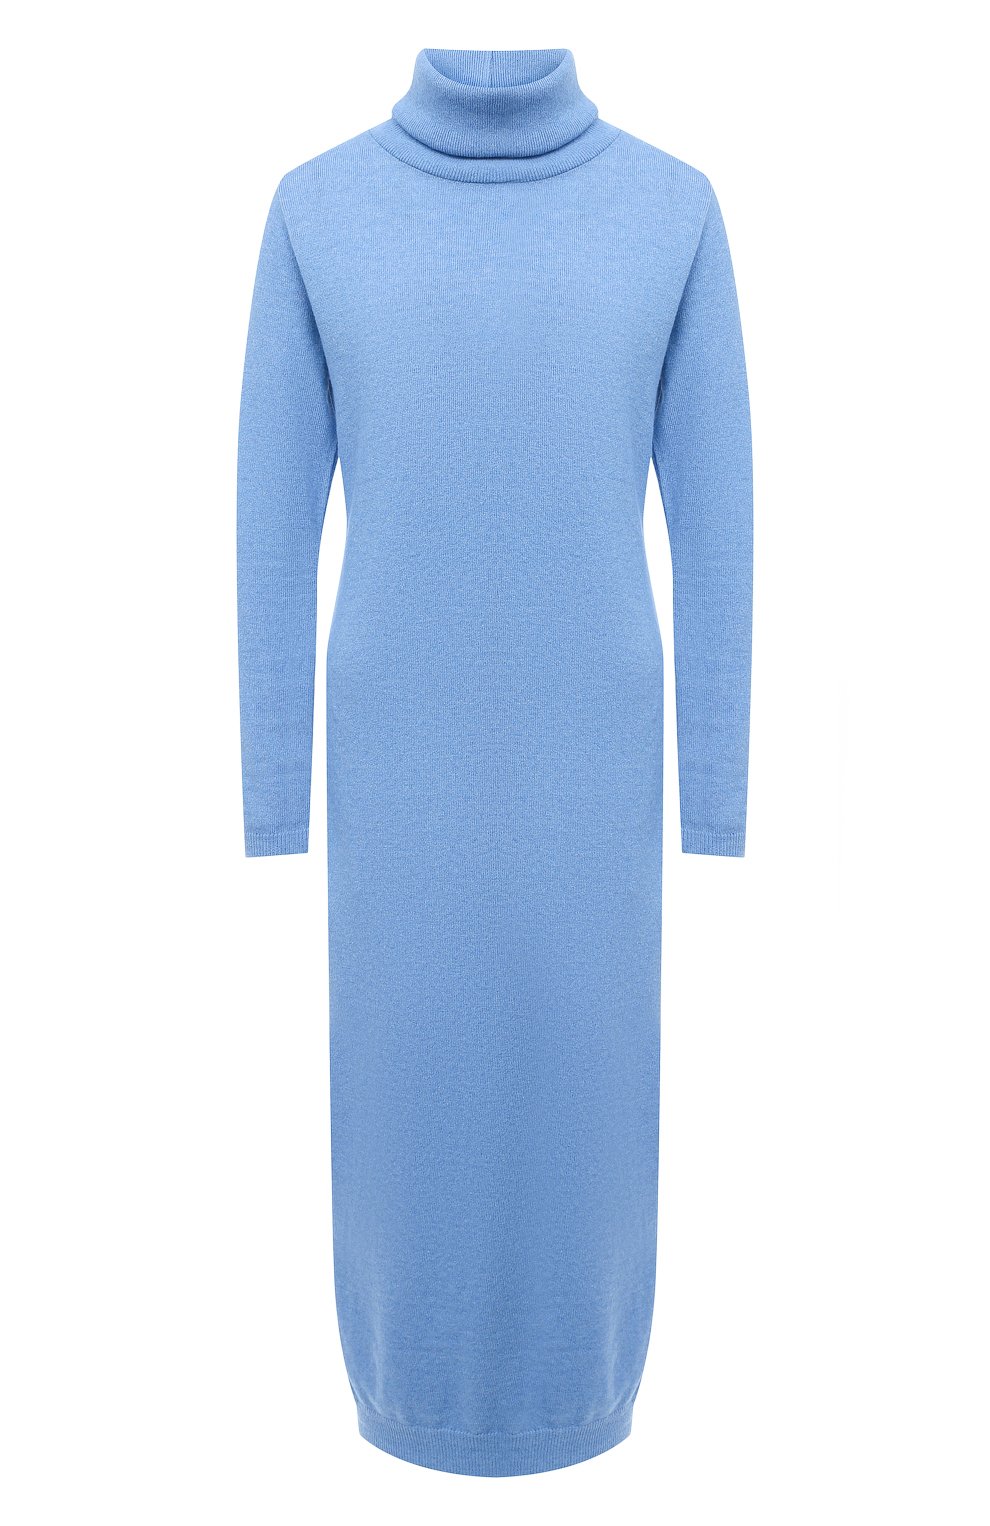 Женское голубое платье PIETRO BRUNELLI — купить в интернет-магазине ЦУМ